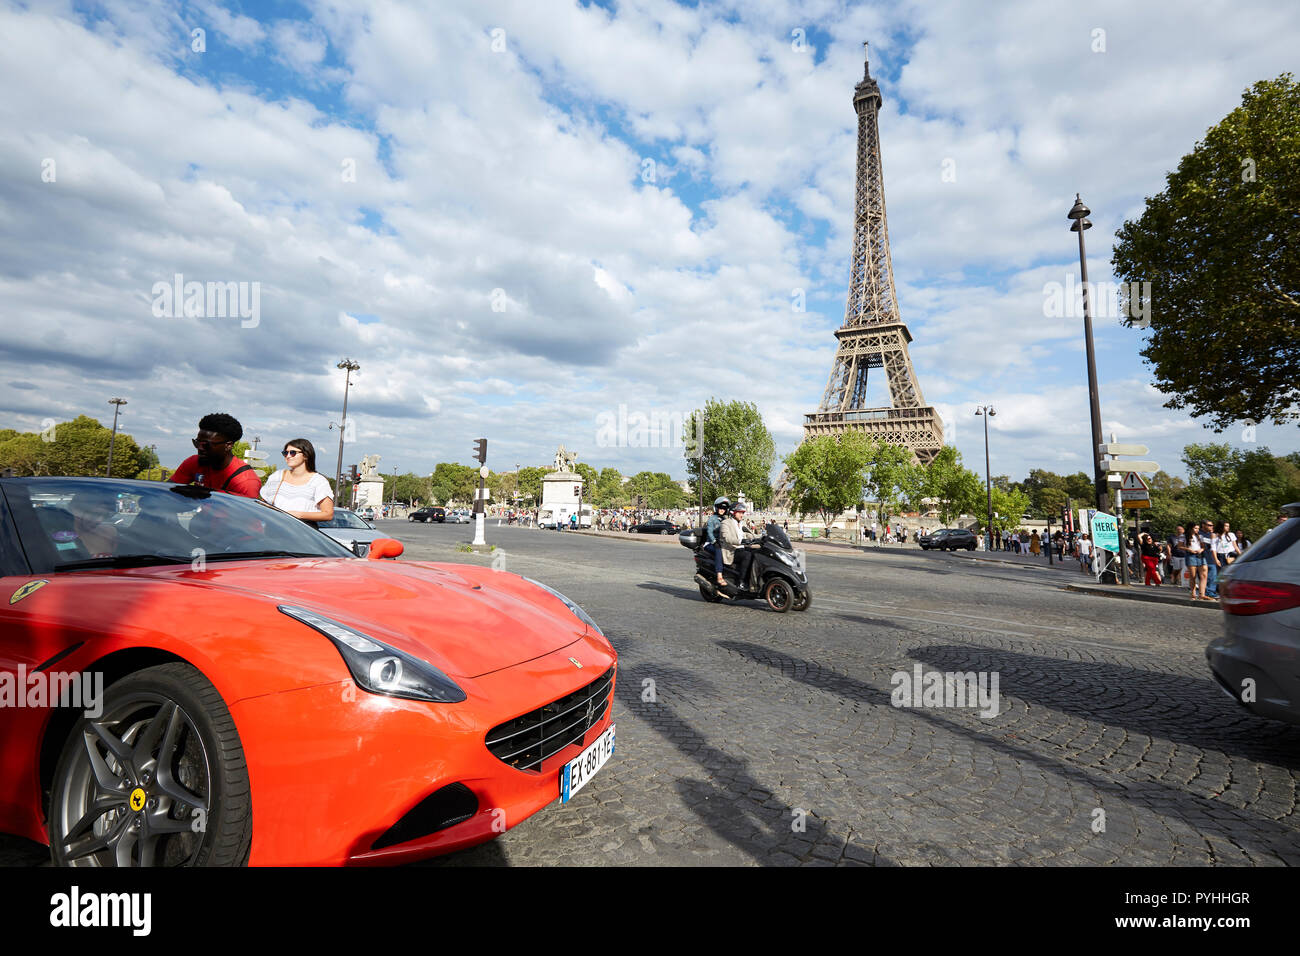 Paris, Ile-de-France, Frankreich - die Aussicht auf die aveunue de New York zum Eiffelturm, Tour Eiffel, die wichtigsten Sehenswürdigkeiten der französischen Hauptstadt. Stockfoto